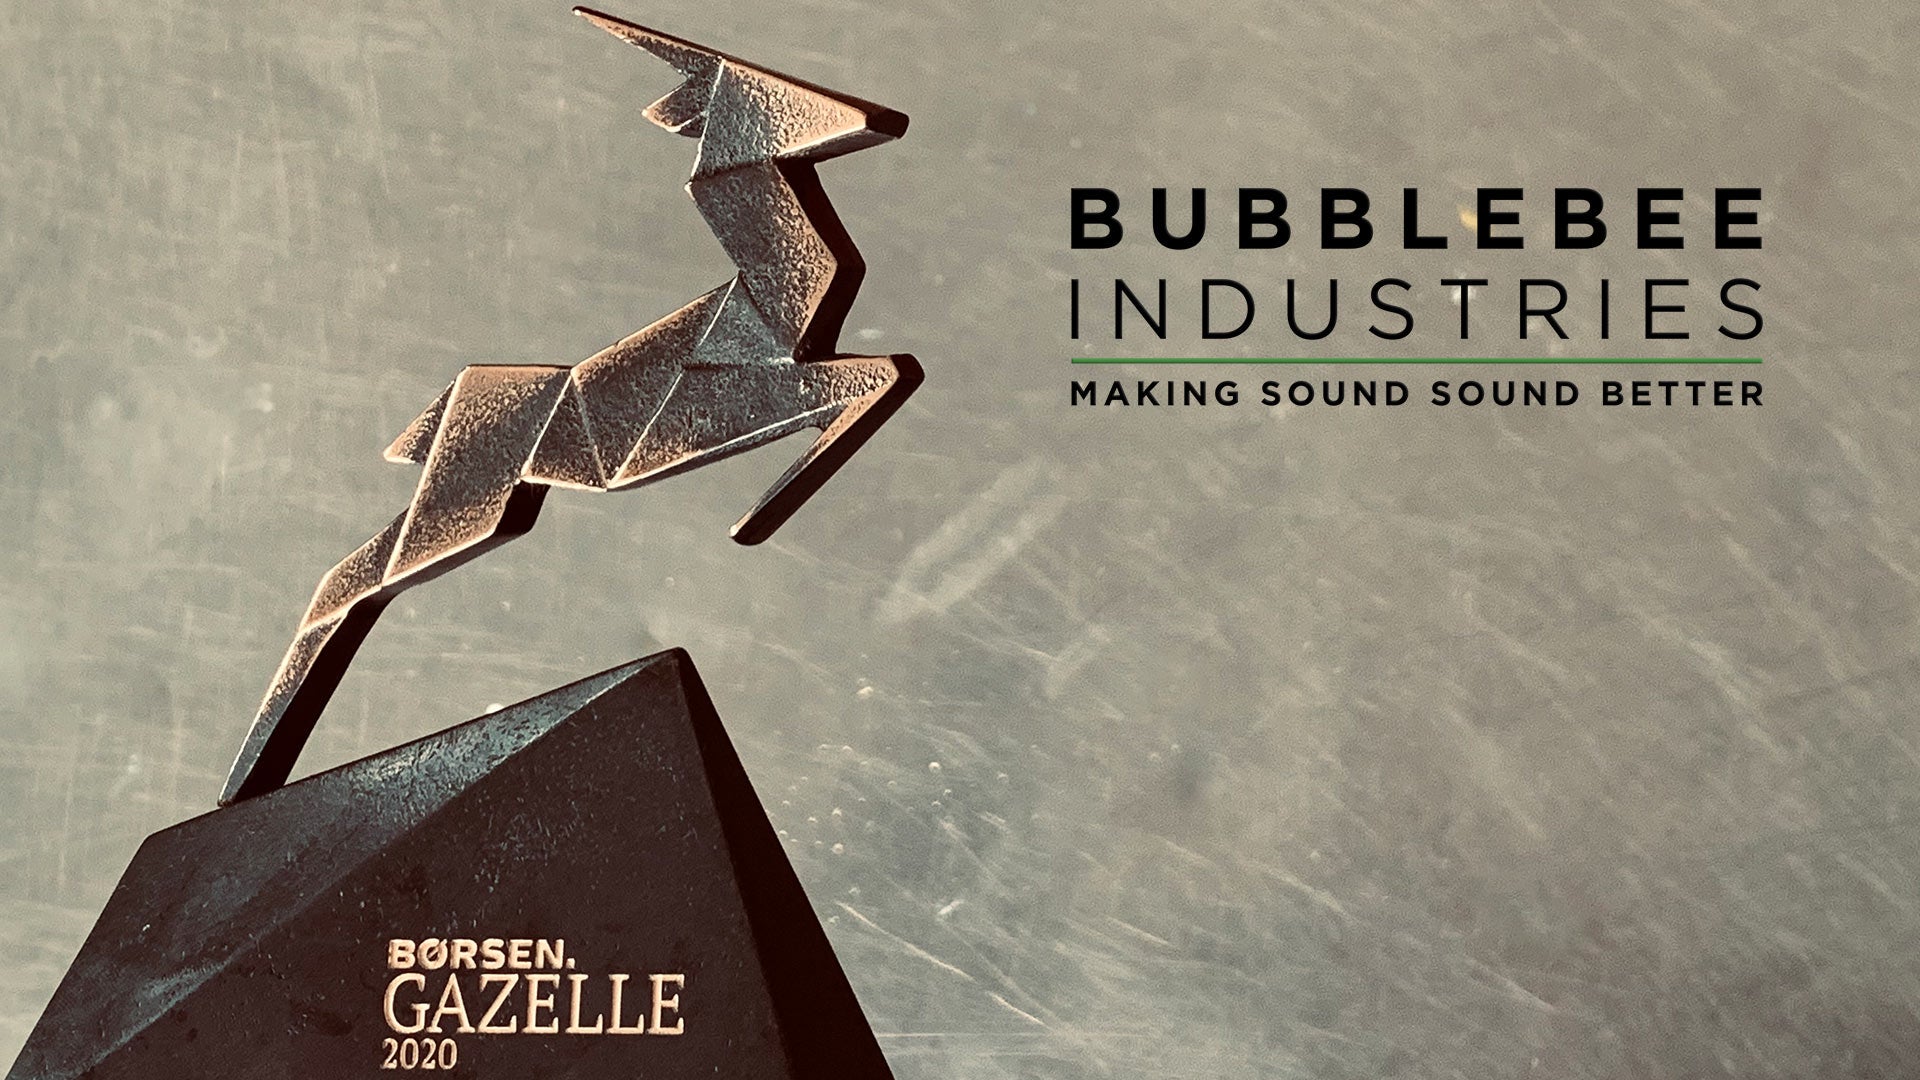 Børsen Gazelle 2020 Bubblebee Industries